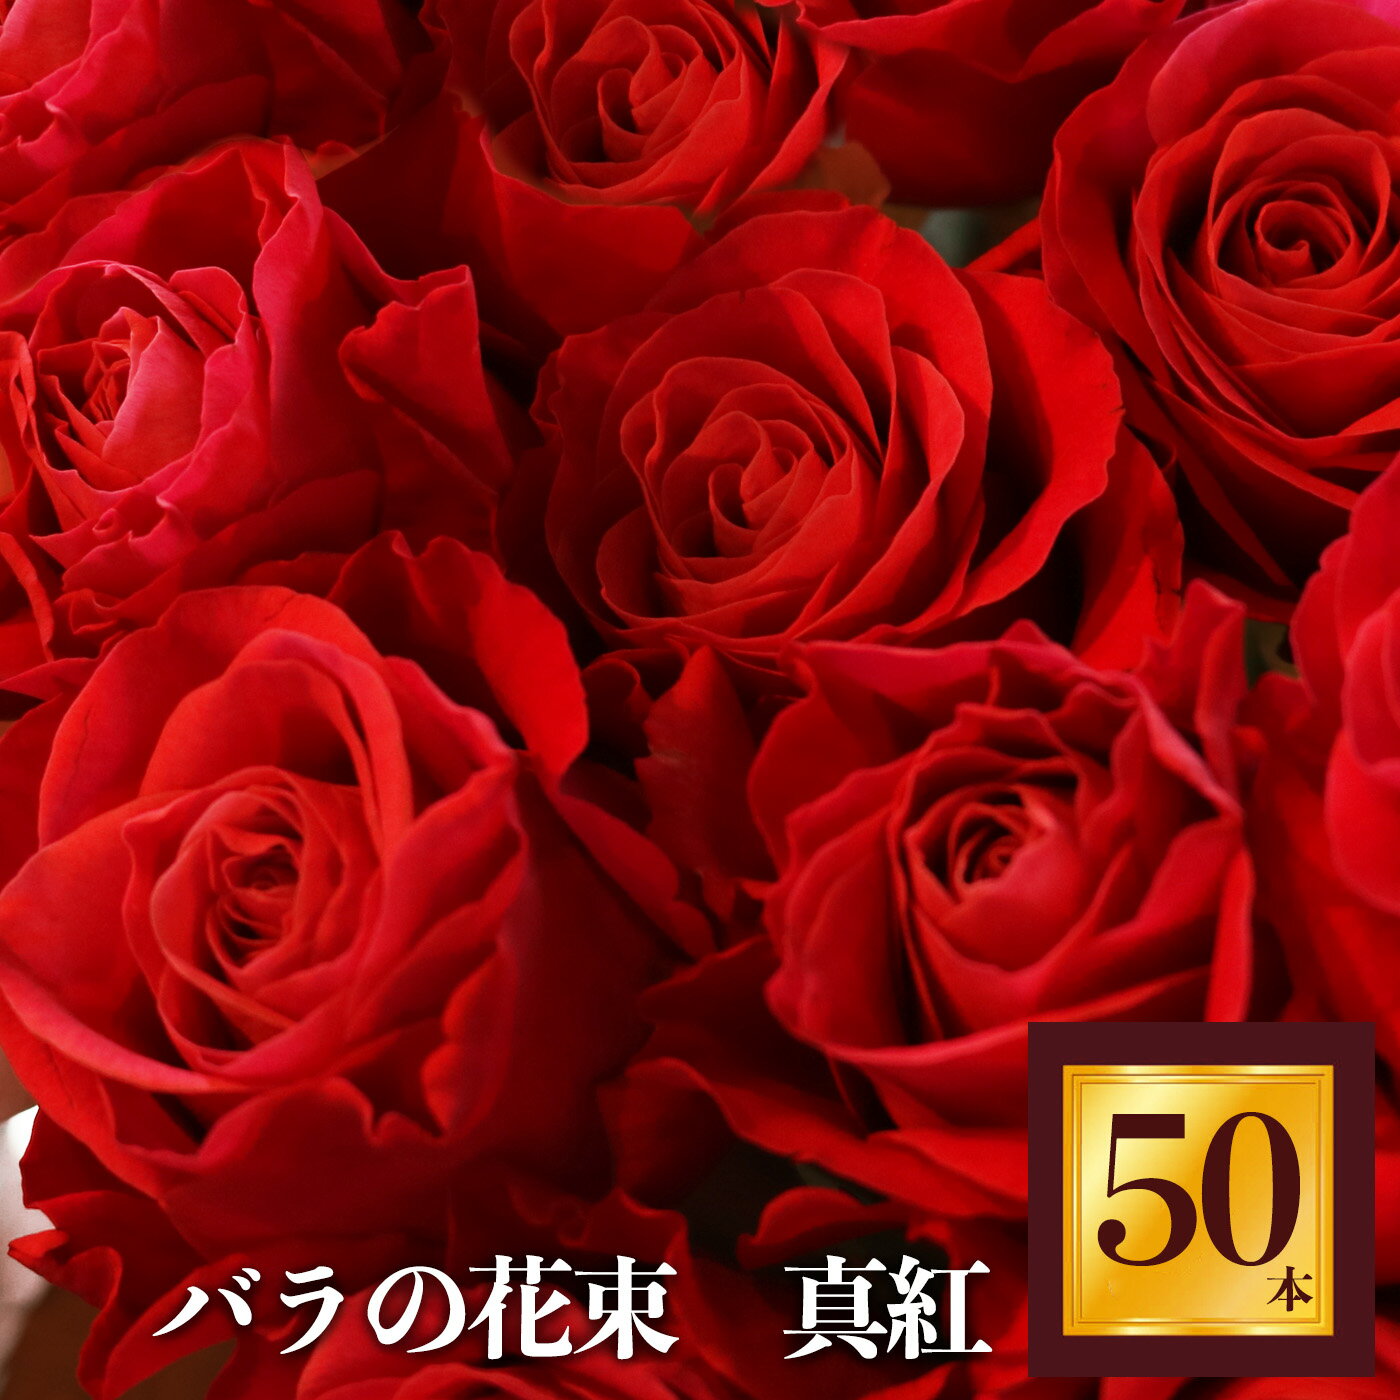 29位! 口コミ数「0件」評価「0」Heguri Rose バラの花束 （赤バラ 50本）ローズ フラワー 薔薇 新鮮 高品質 豪華 真紅のバラ 綺麗 平群のバラ 花束 平群ブ･･･ 